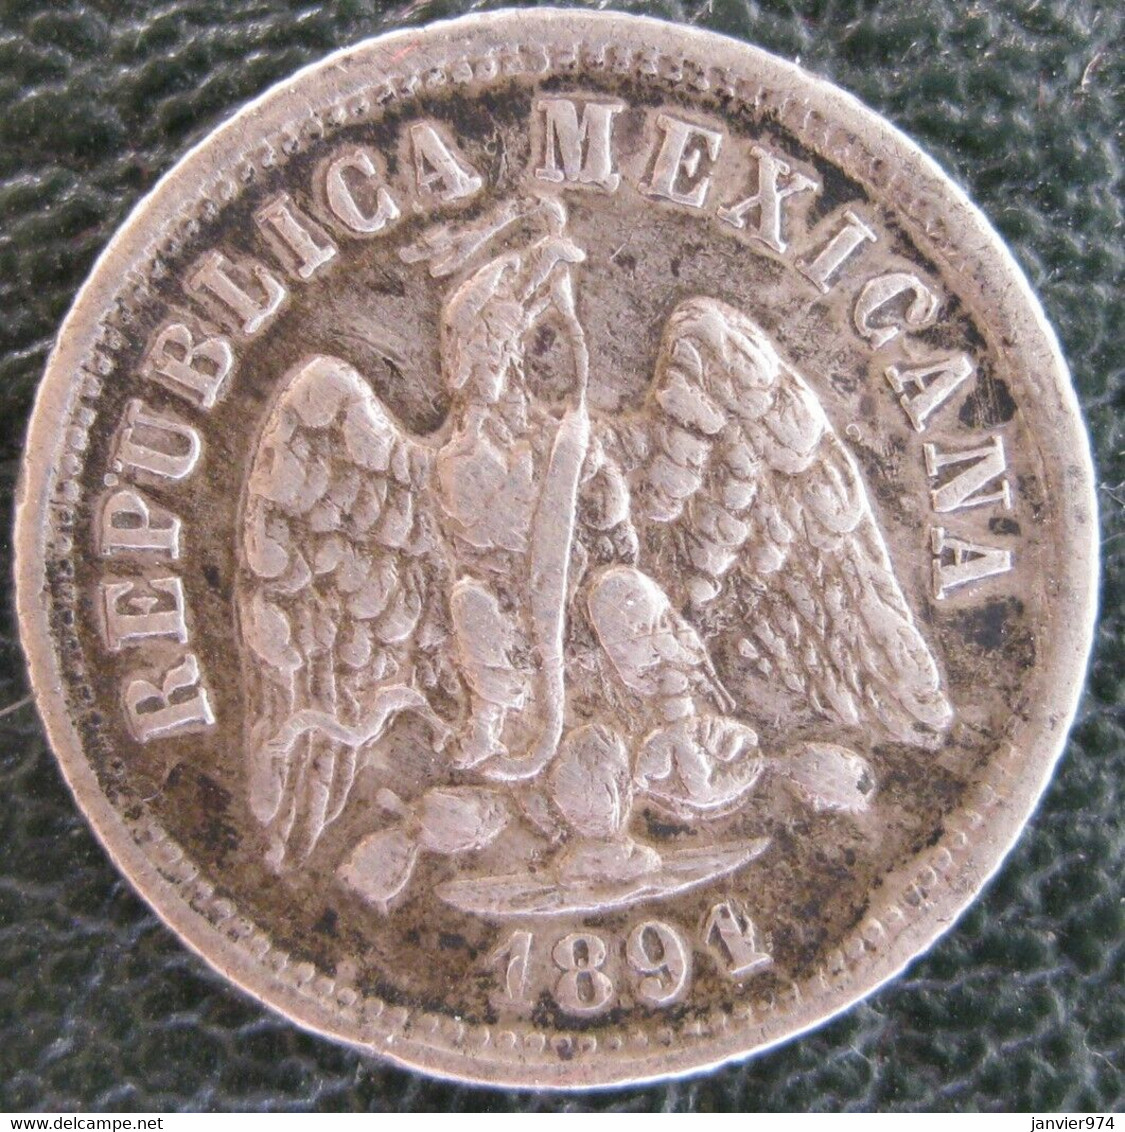 Variété Over Date,  10 Centavos 1891 (1 Sur 0) . Zs Zacatecas . Argent. Rare - Mexico